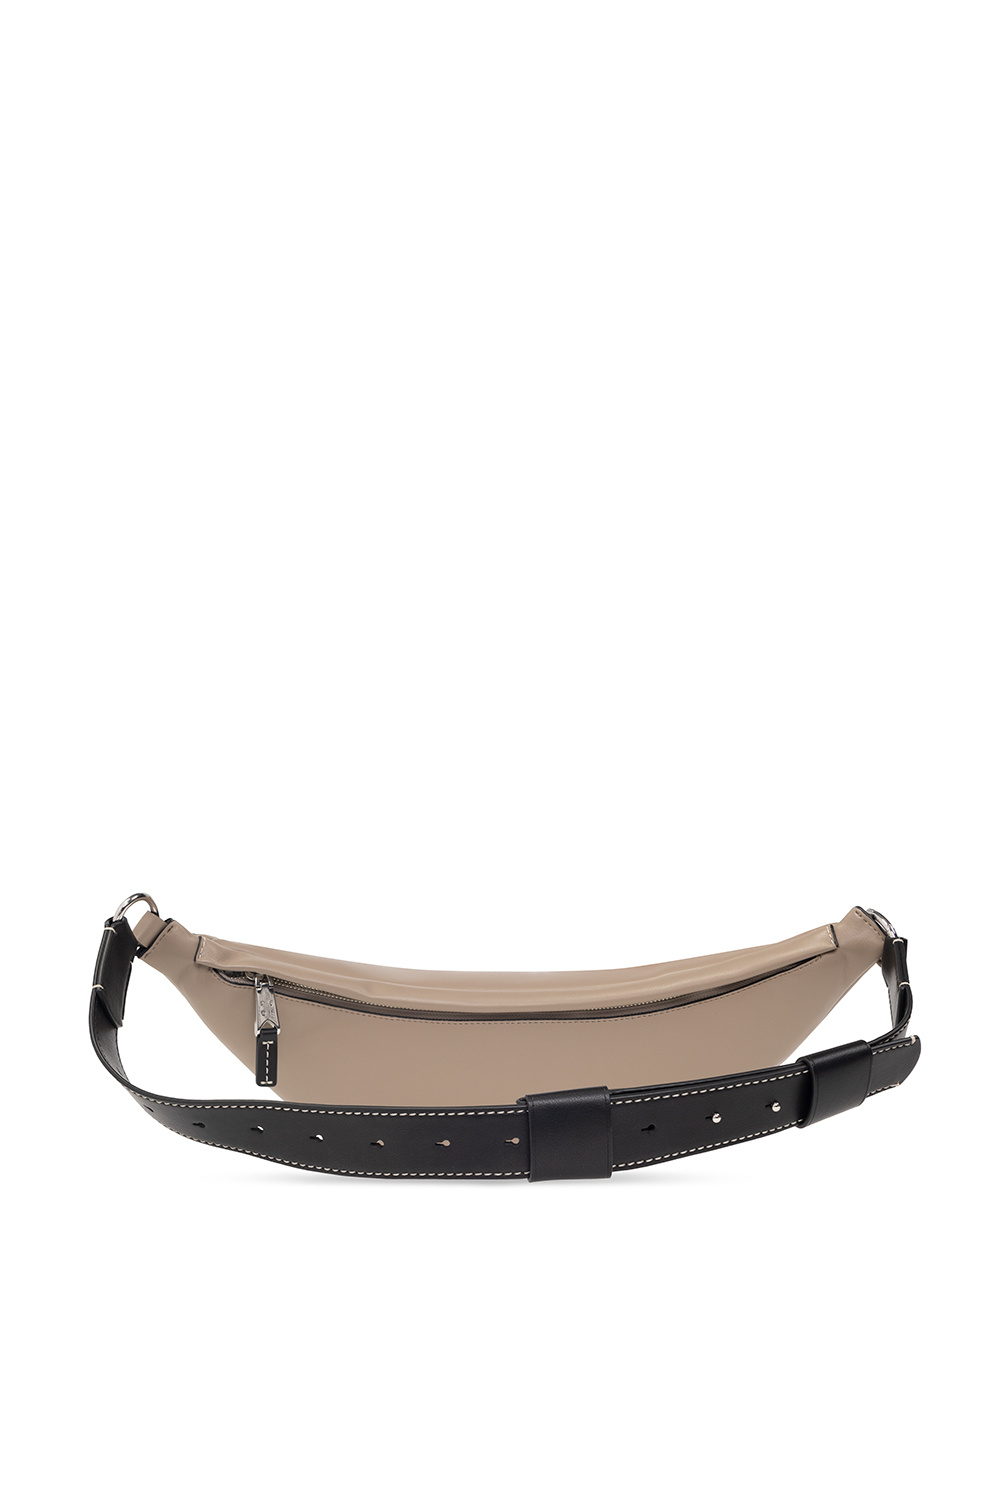 Proenza Schouler LONG Label ‘Stanton’ belt bag